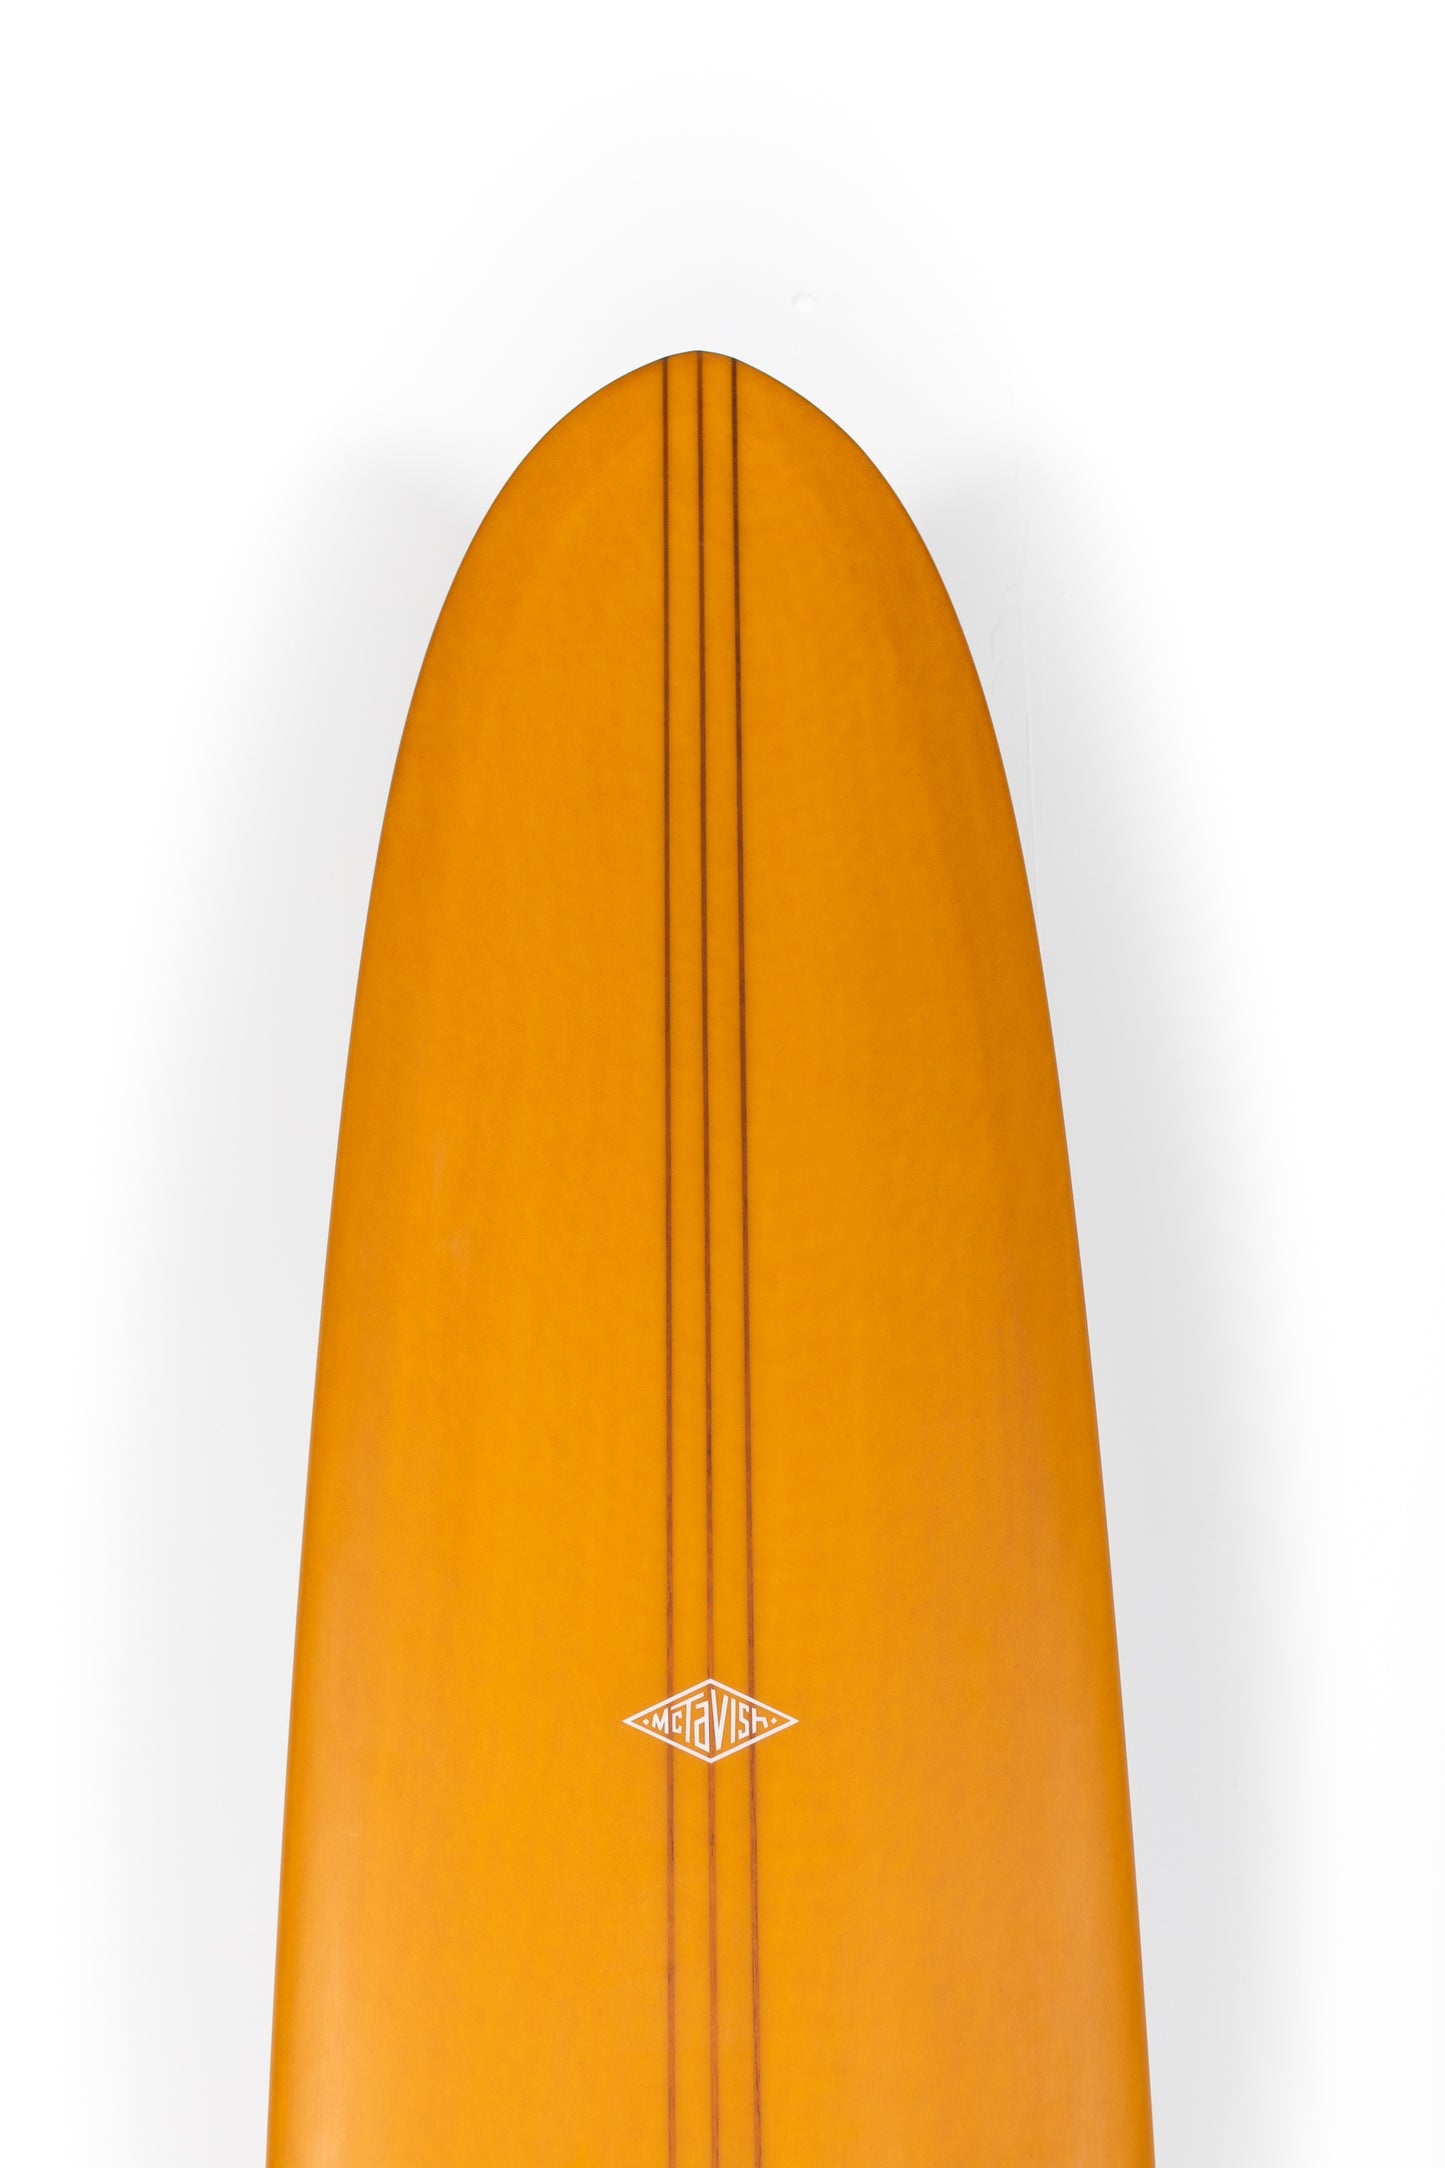 
                  
                    Pukas Surf Shop - McTavish Surfboard - THE DIRT NAP by Bob McTavish - 9'5" x 23 x 2 7/8 - BM00784
                  
                